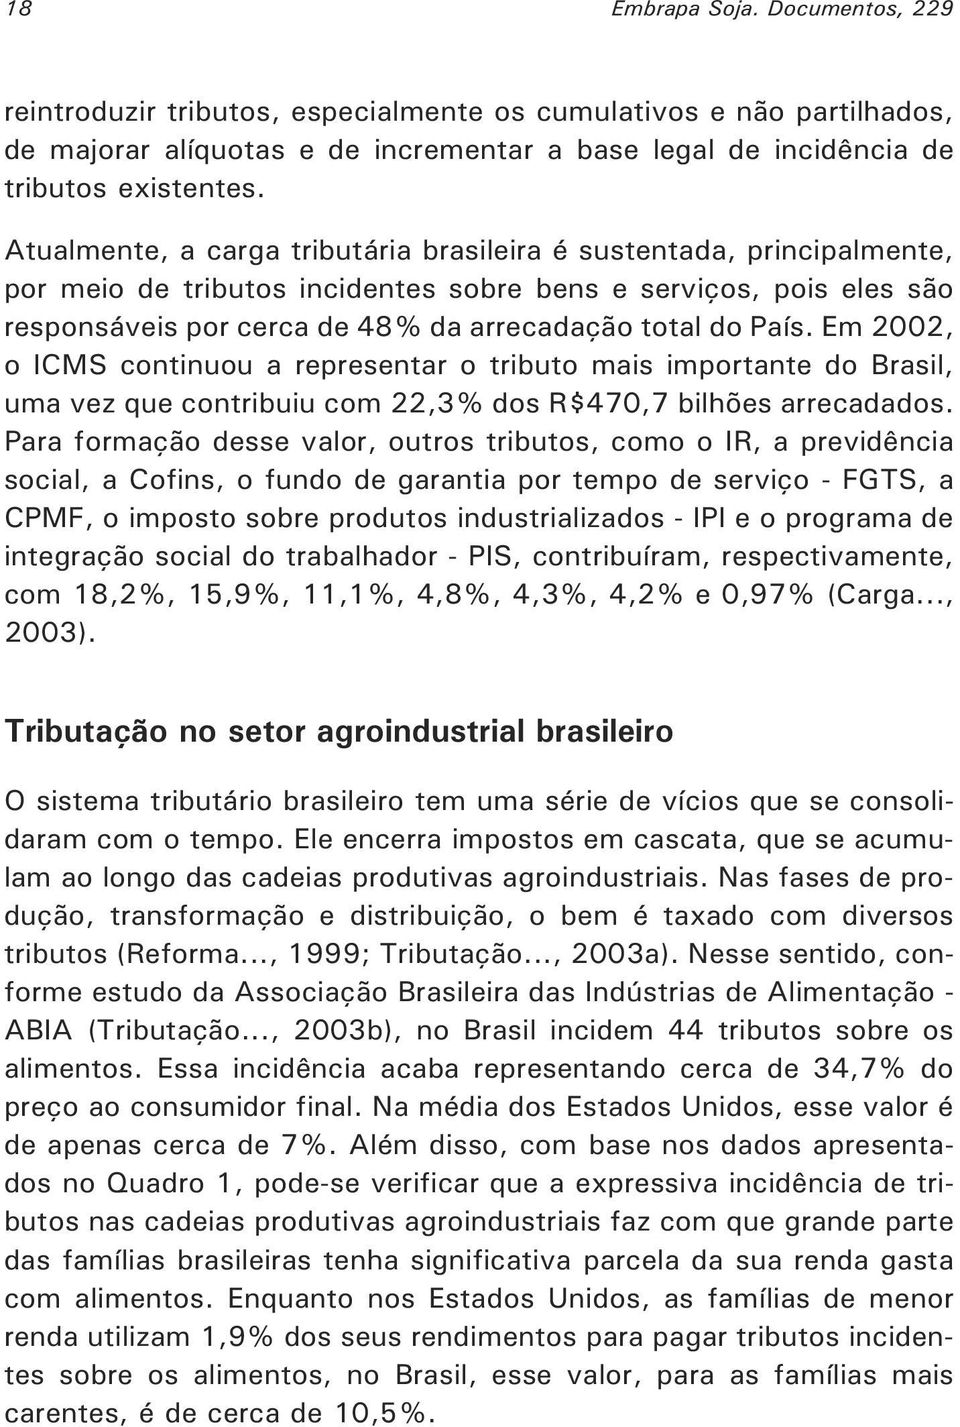 Em 2002, o ICMS continuou a representar o tributo mais importante do Brasil, uma vez que contribuiu com 22,3% dos R$470,7 bilhões arrecadados.